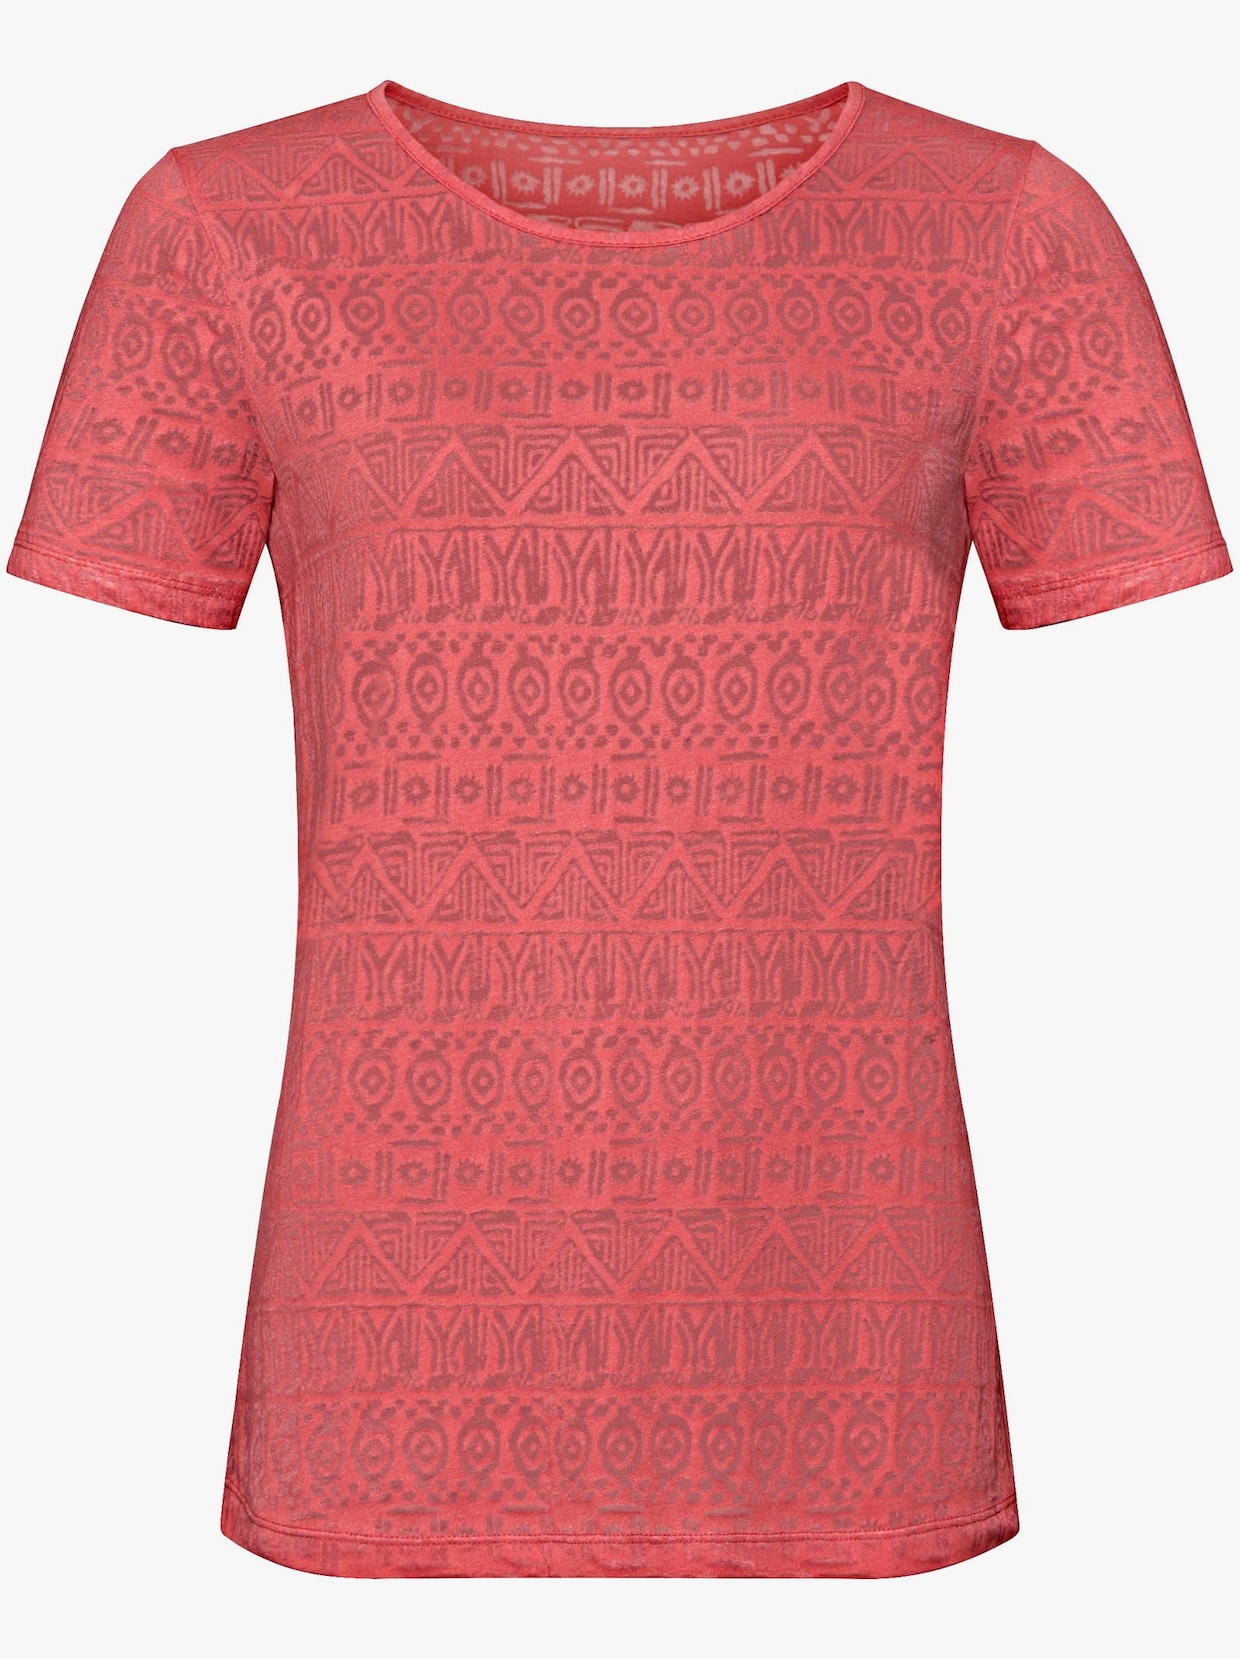 Tričko s krátkým rukávem - korálově červená